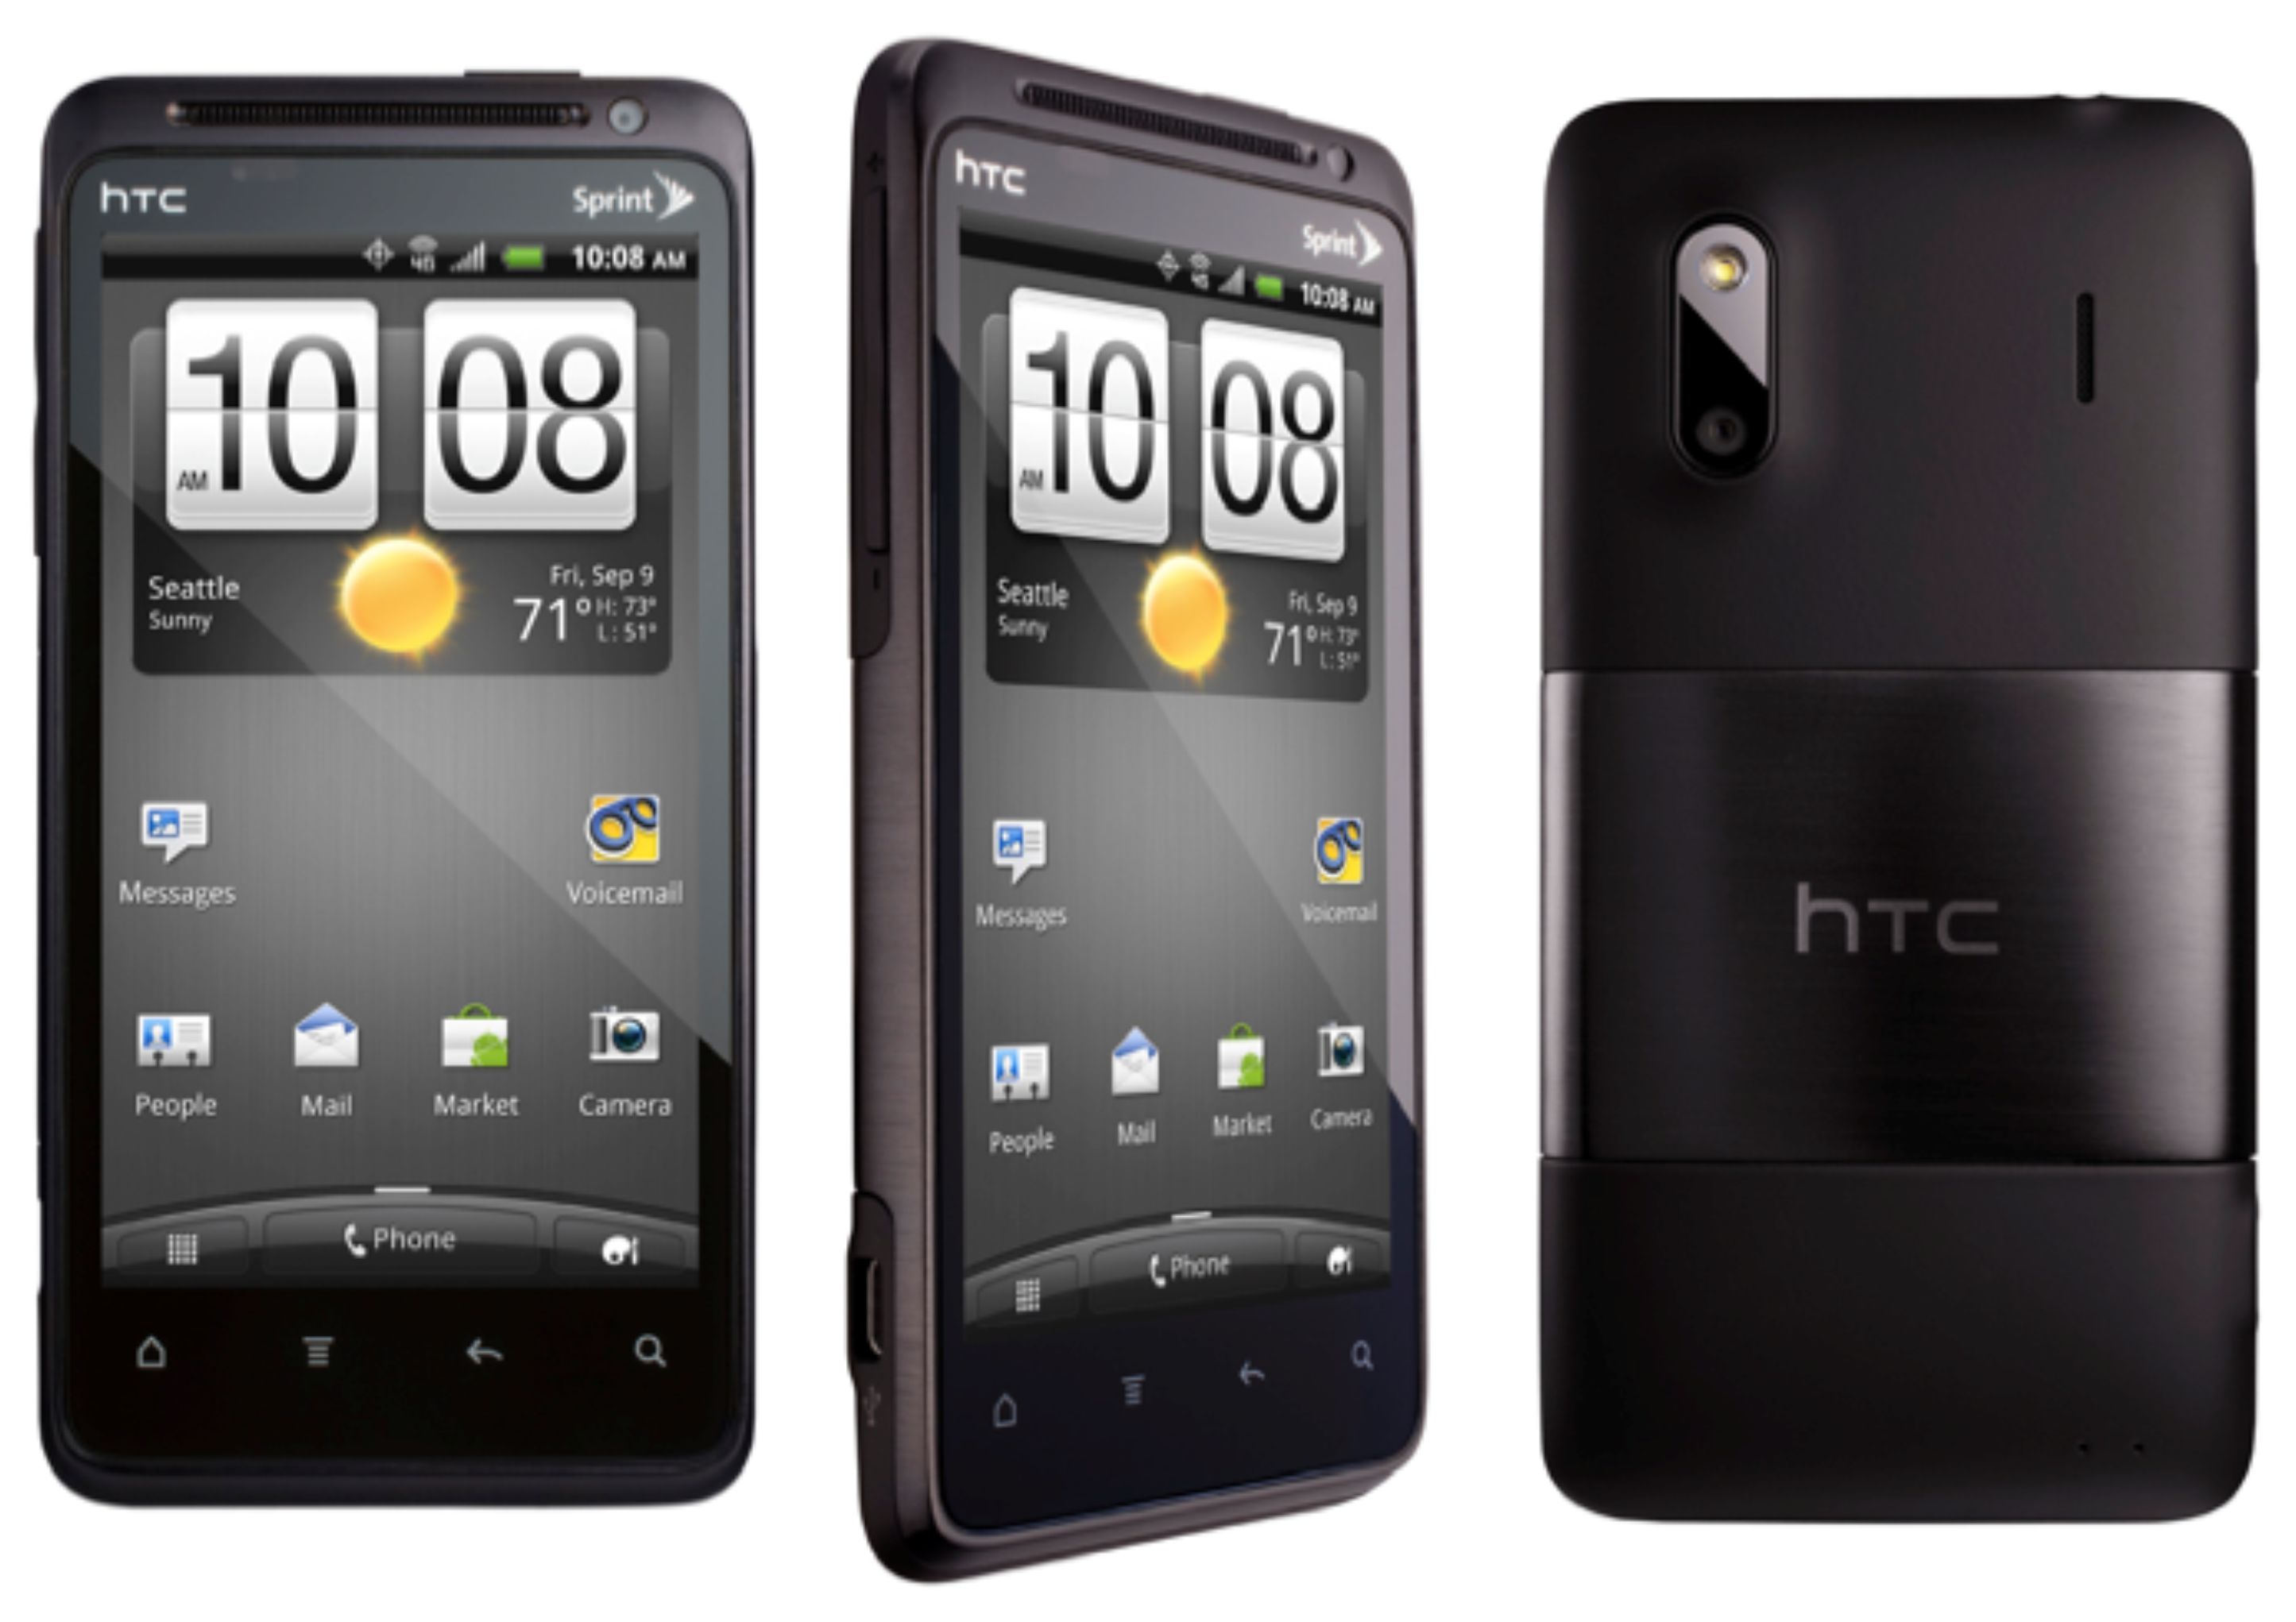  الروم الرسمي لجهاز HTC Evo Design 4G  الاسم التطوير Kingdom